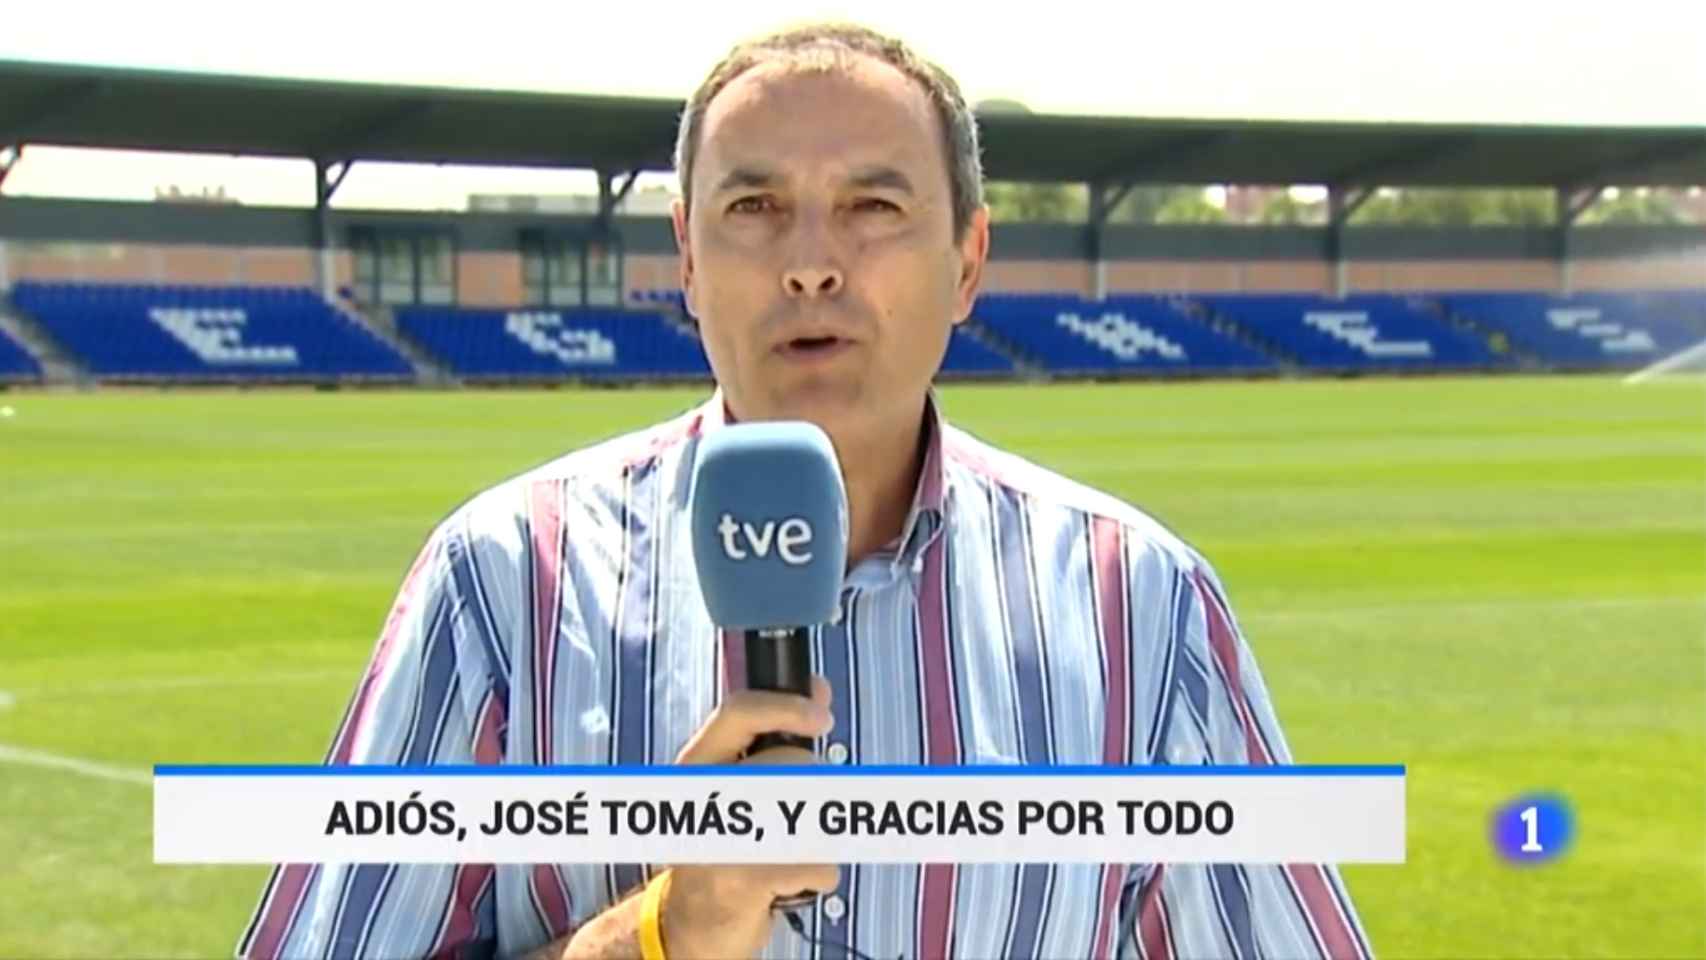 El Telediario de TVE ha homenajeado a José Tomás Martínez Maroto tras su fallecimiento.